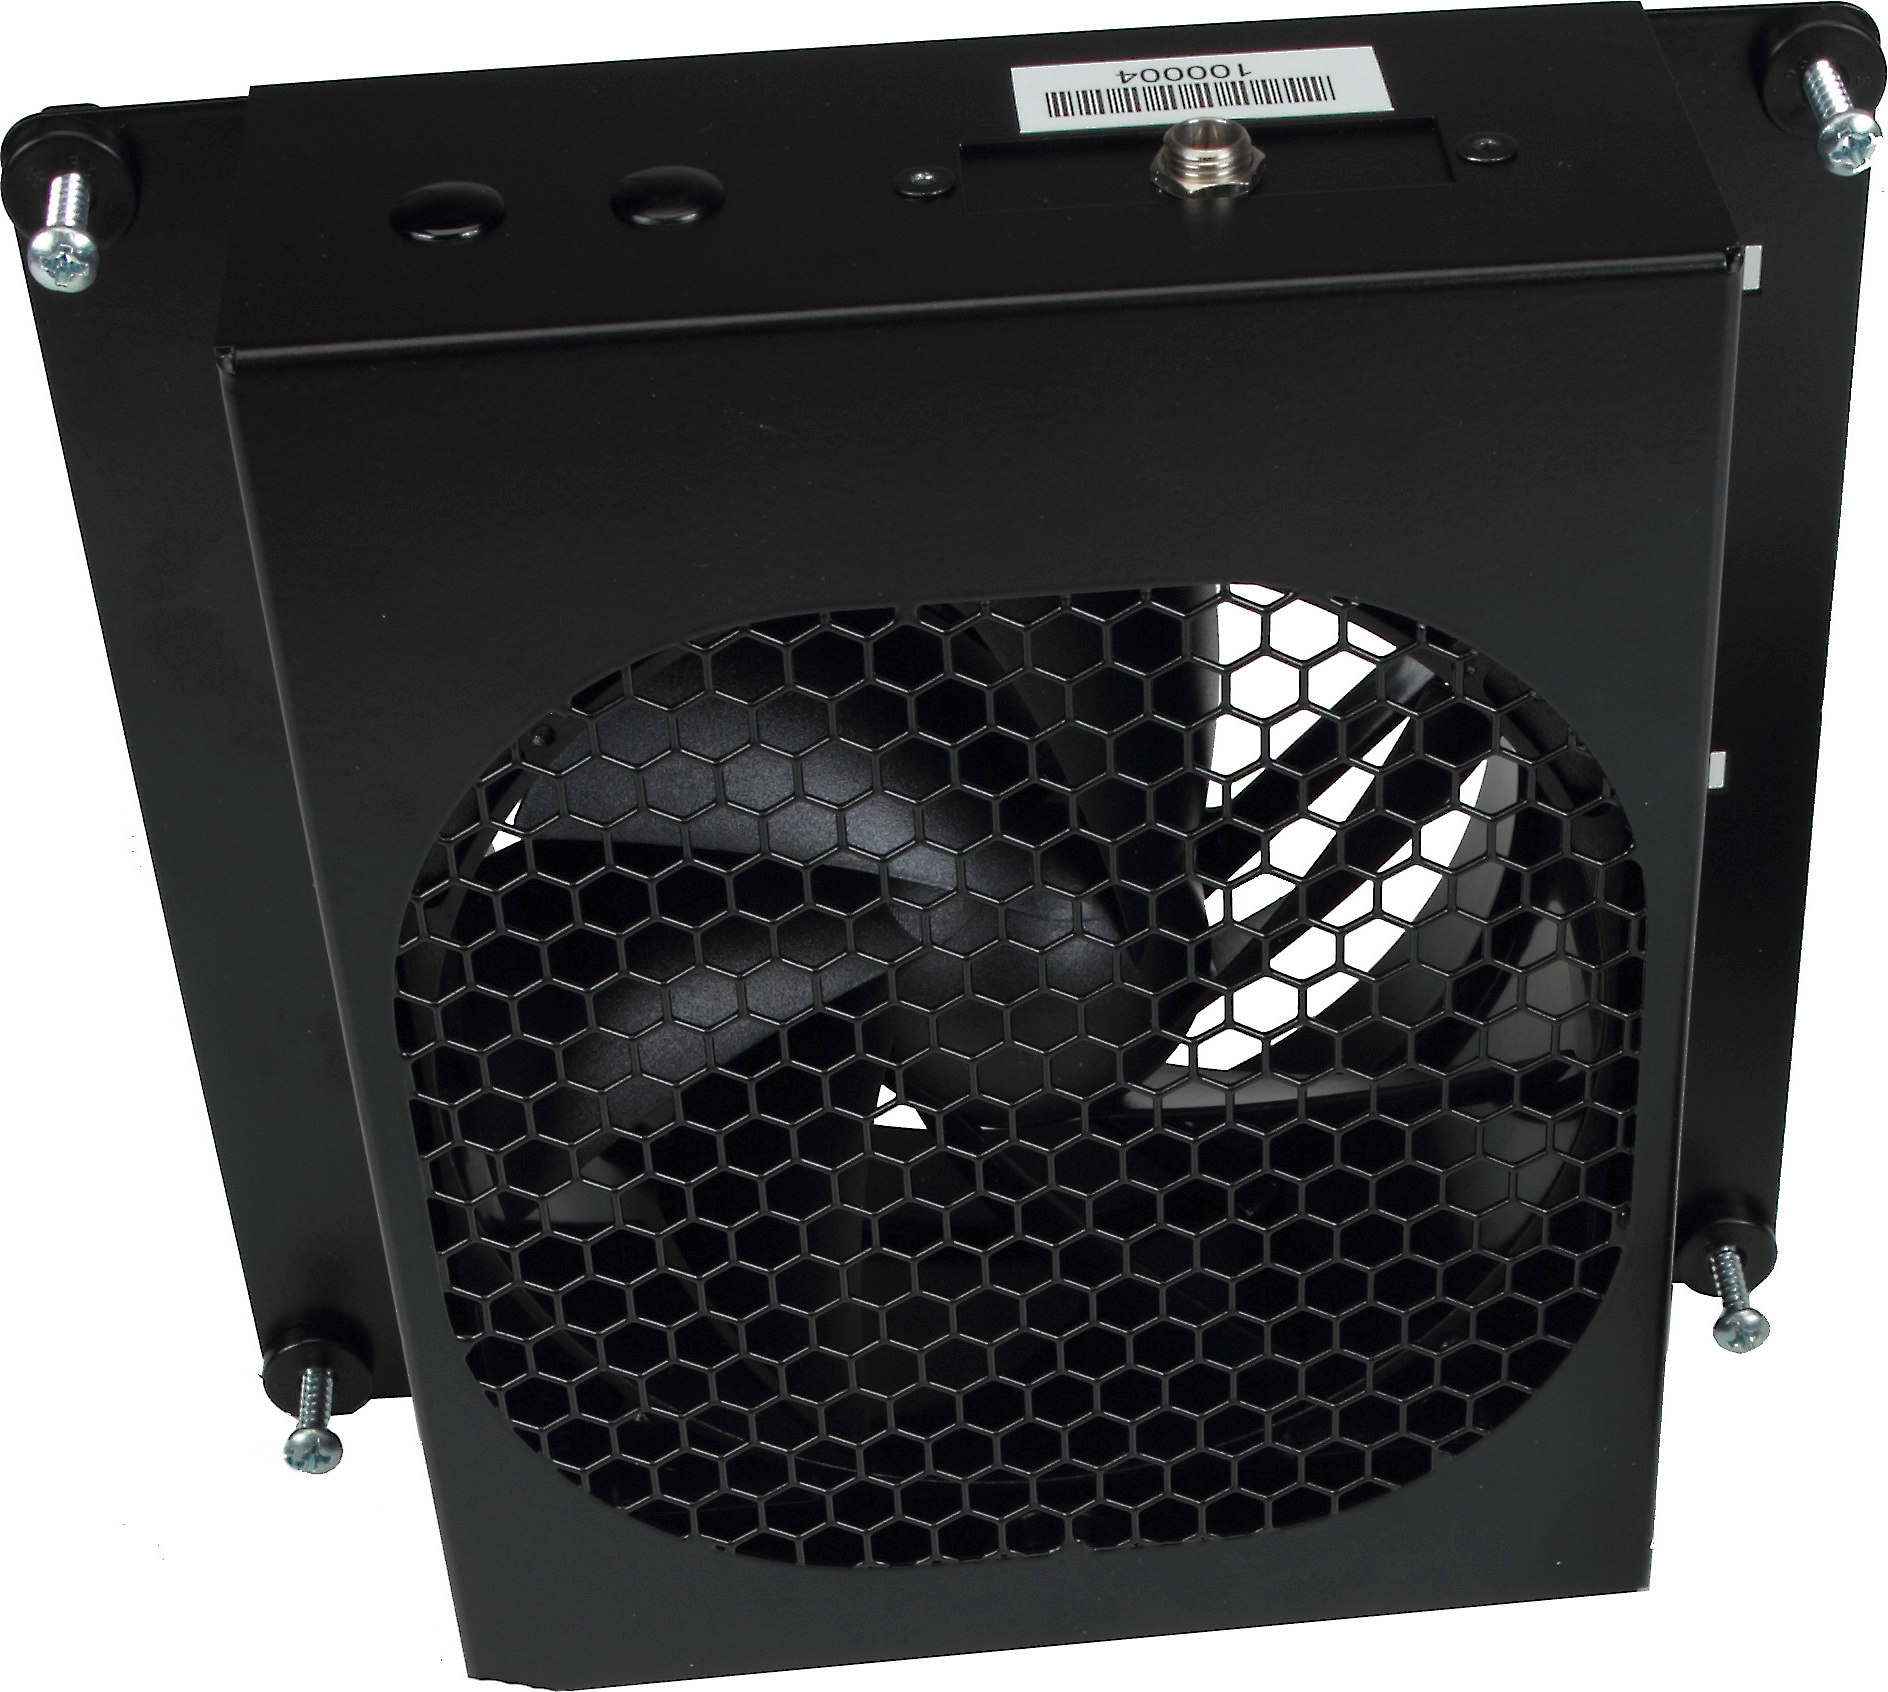 Boragear Bora Audio Video Cabinet Cooling Fan At Crutchfield